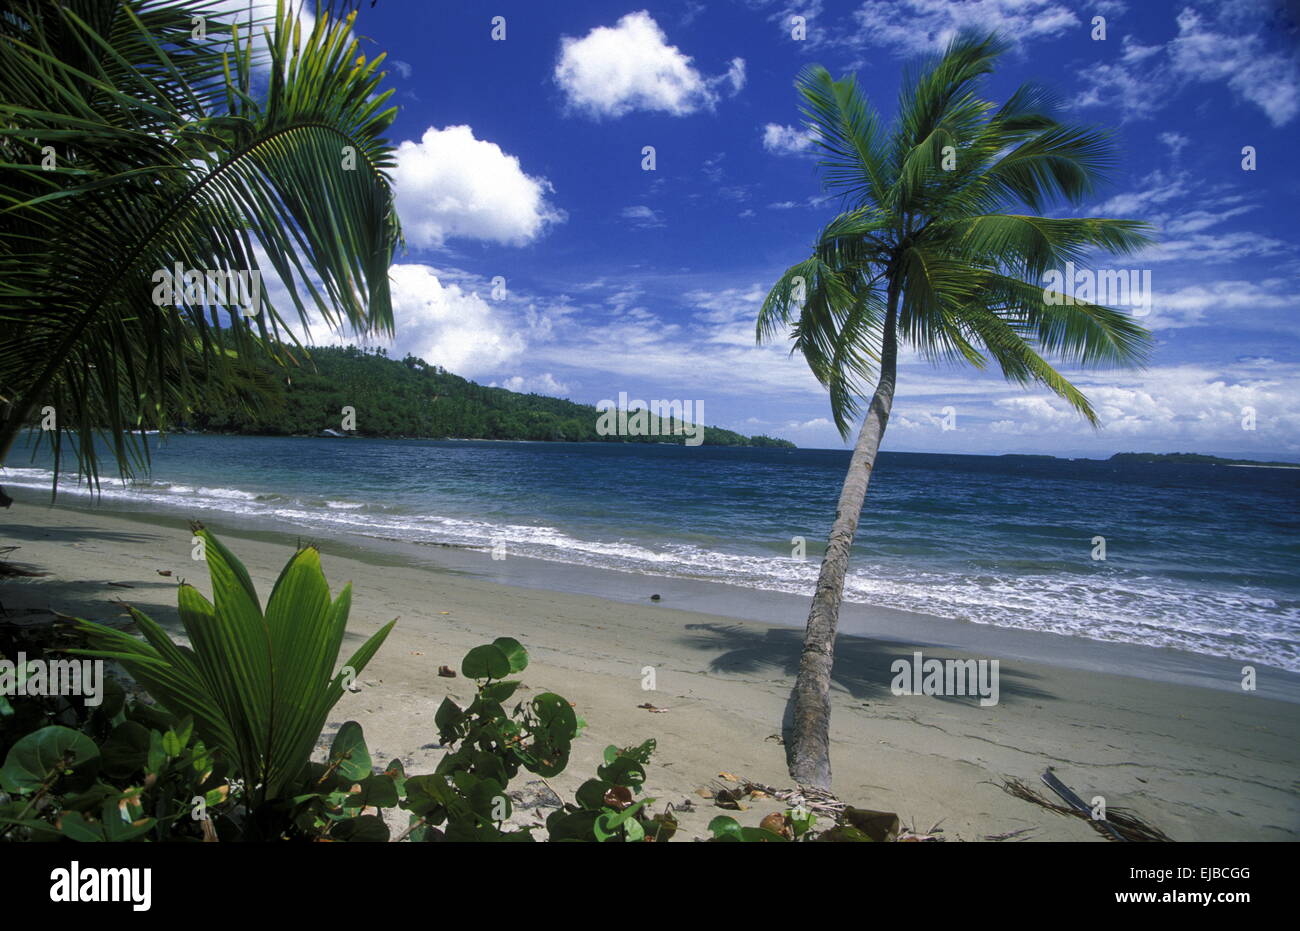 AMERICA CARIBBIAN SEA DOMINICAN REPUBLIC Stock Photo